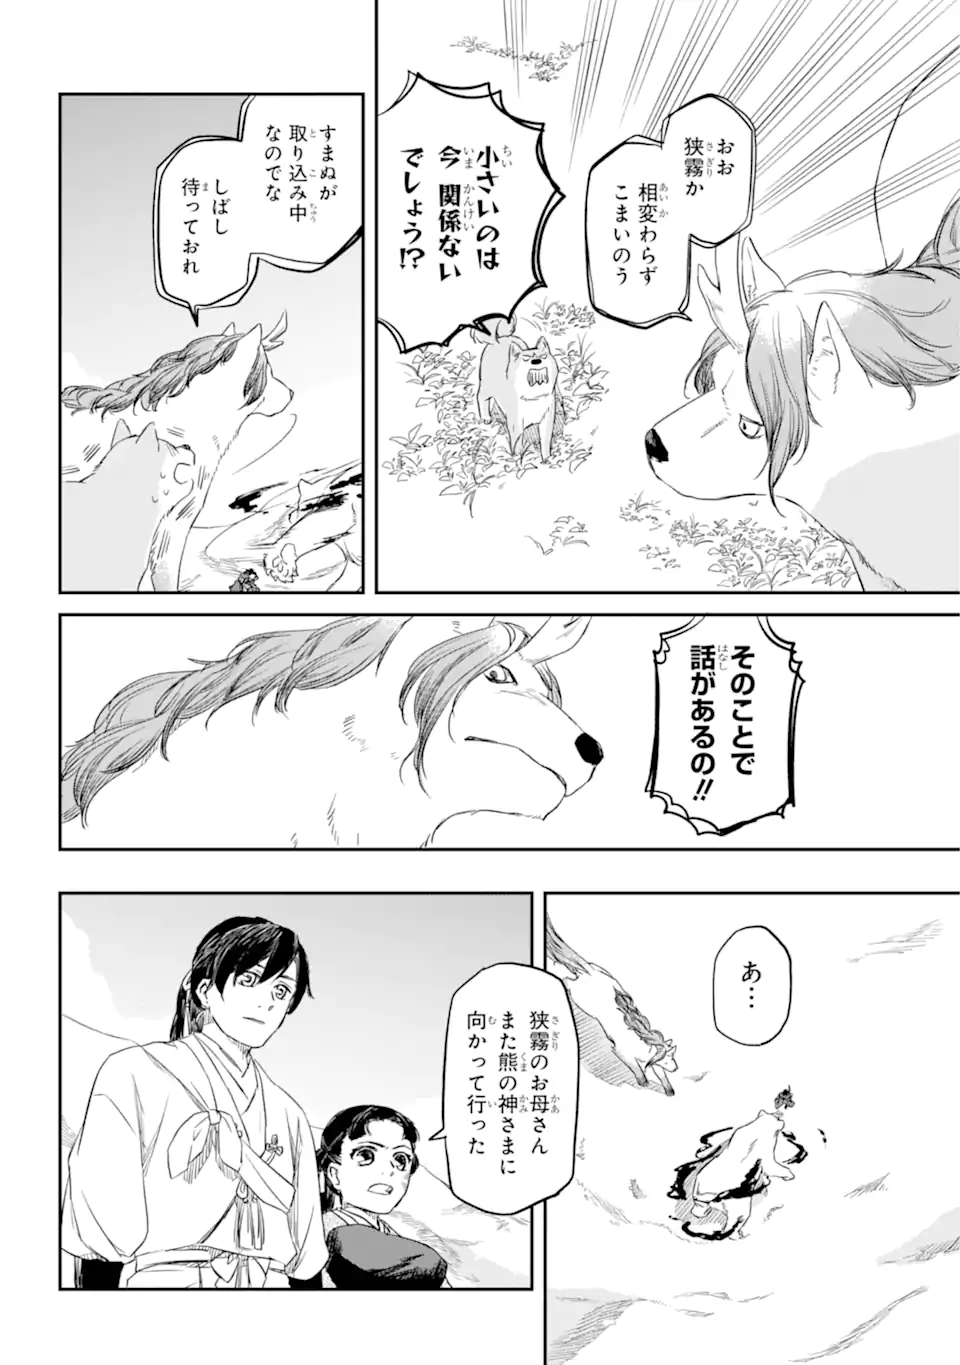 Ryuujin no Musume - Chapter 3.1 - Page 2